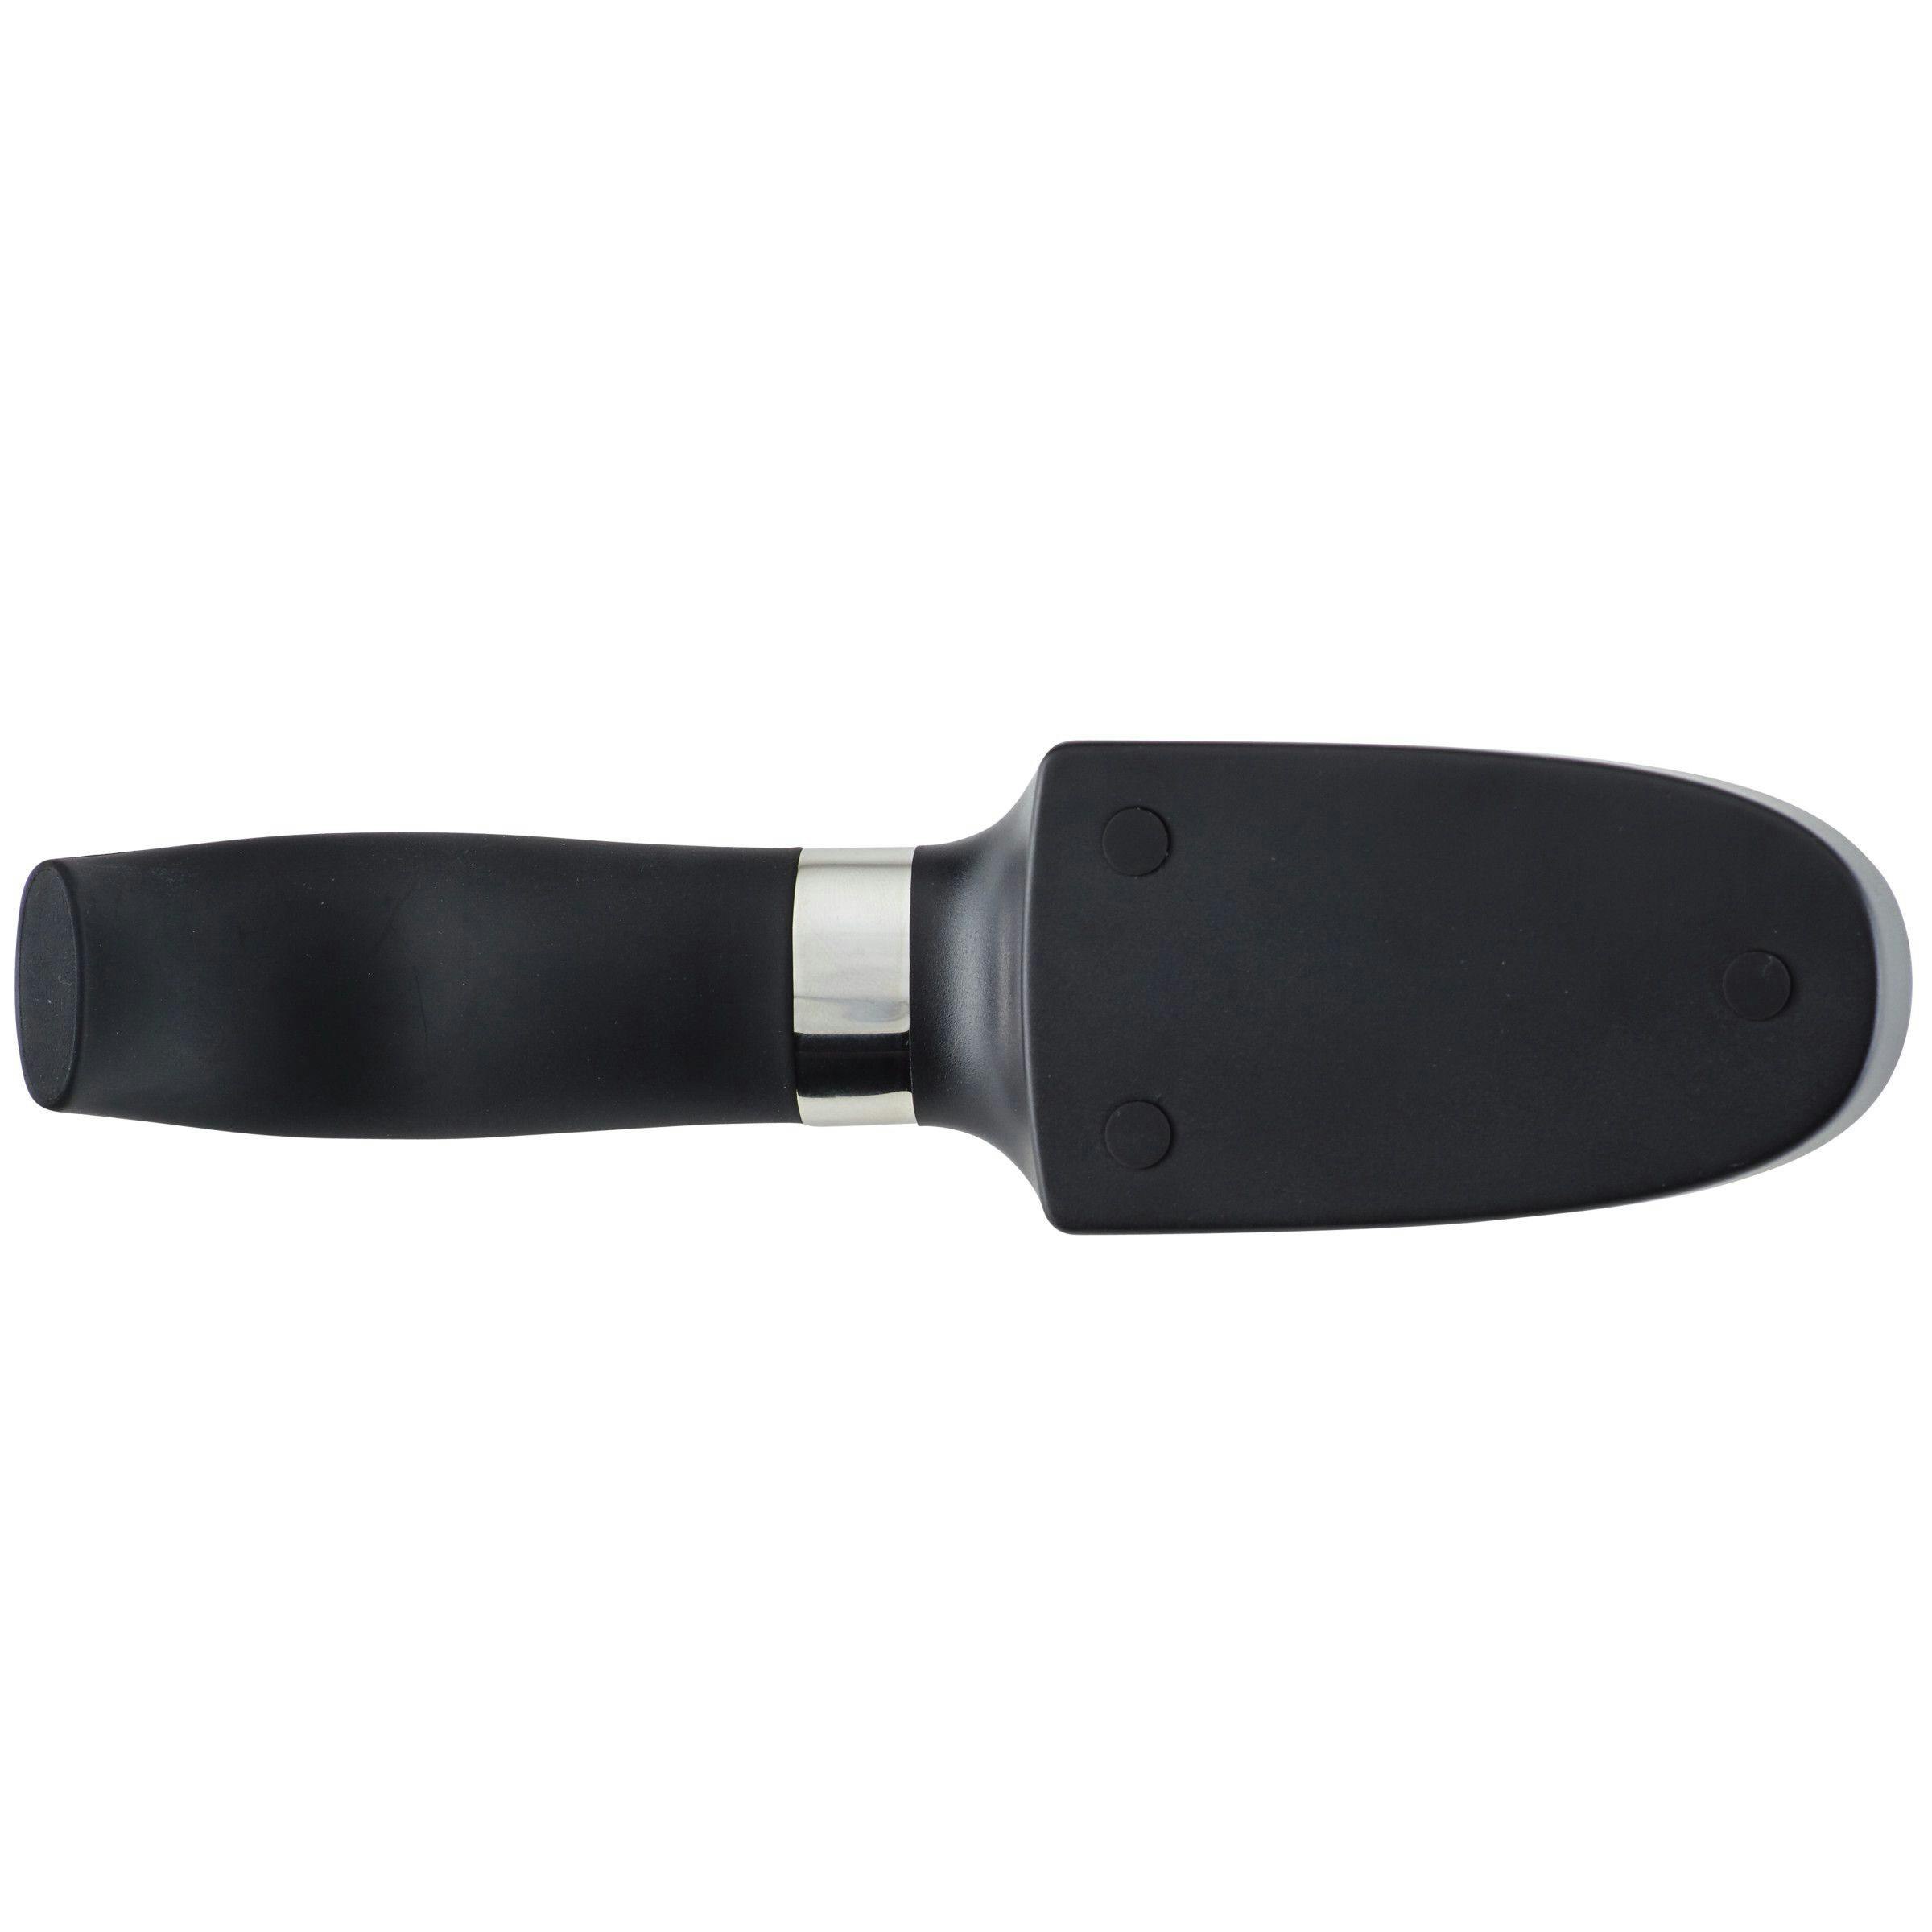 Anolon AlwaysSharp Universal Knife Sharpener, Black